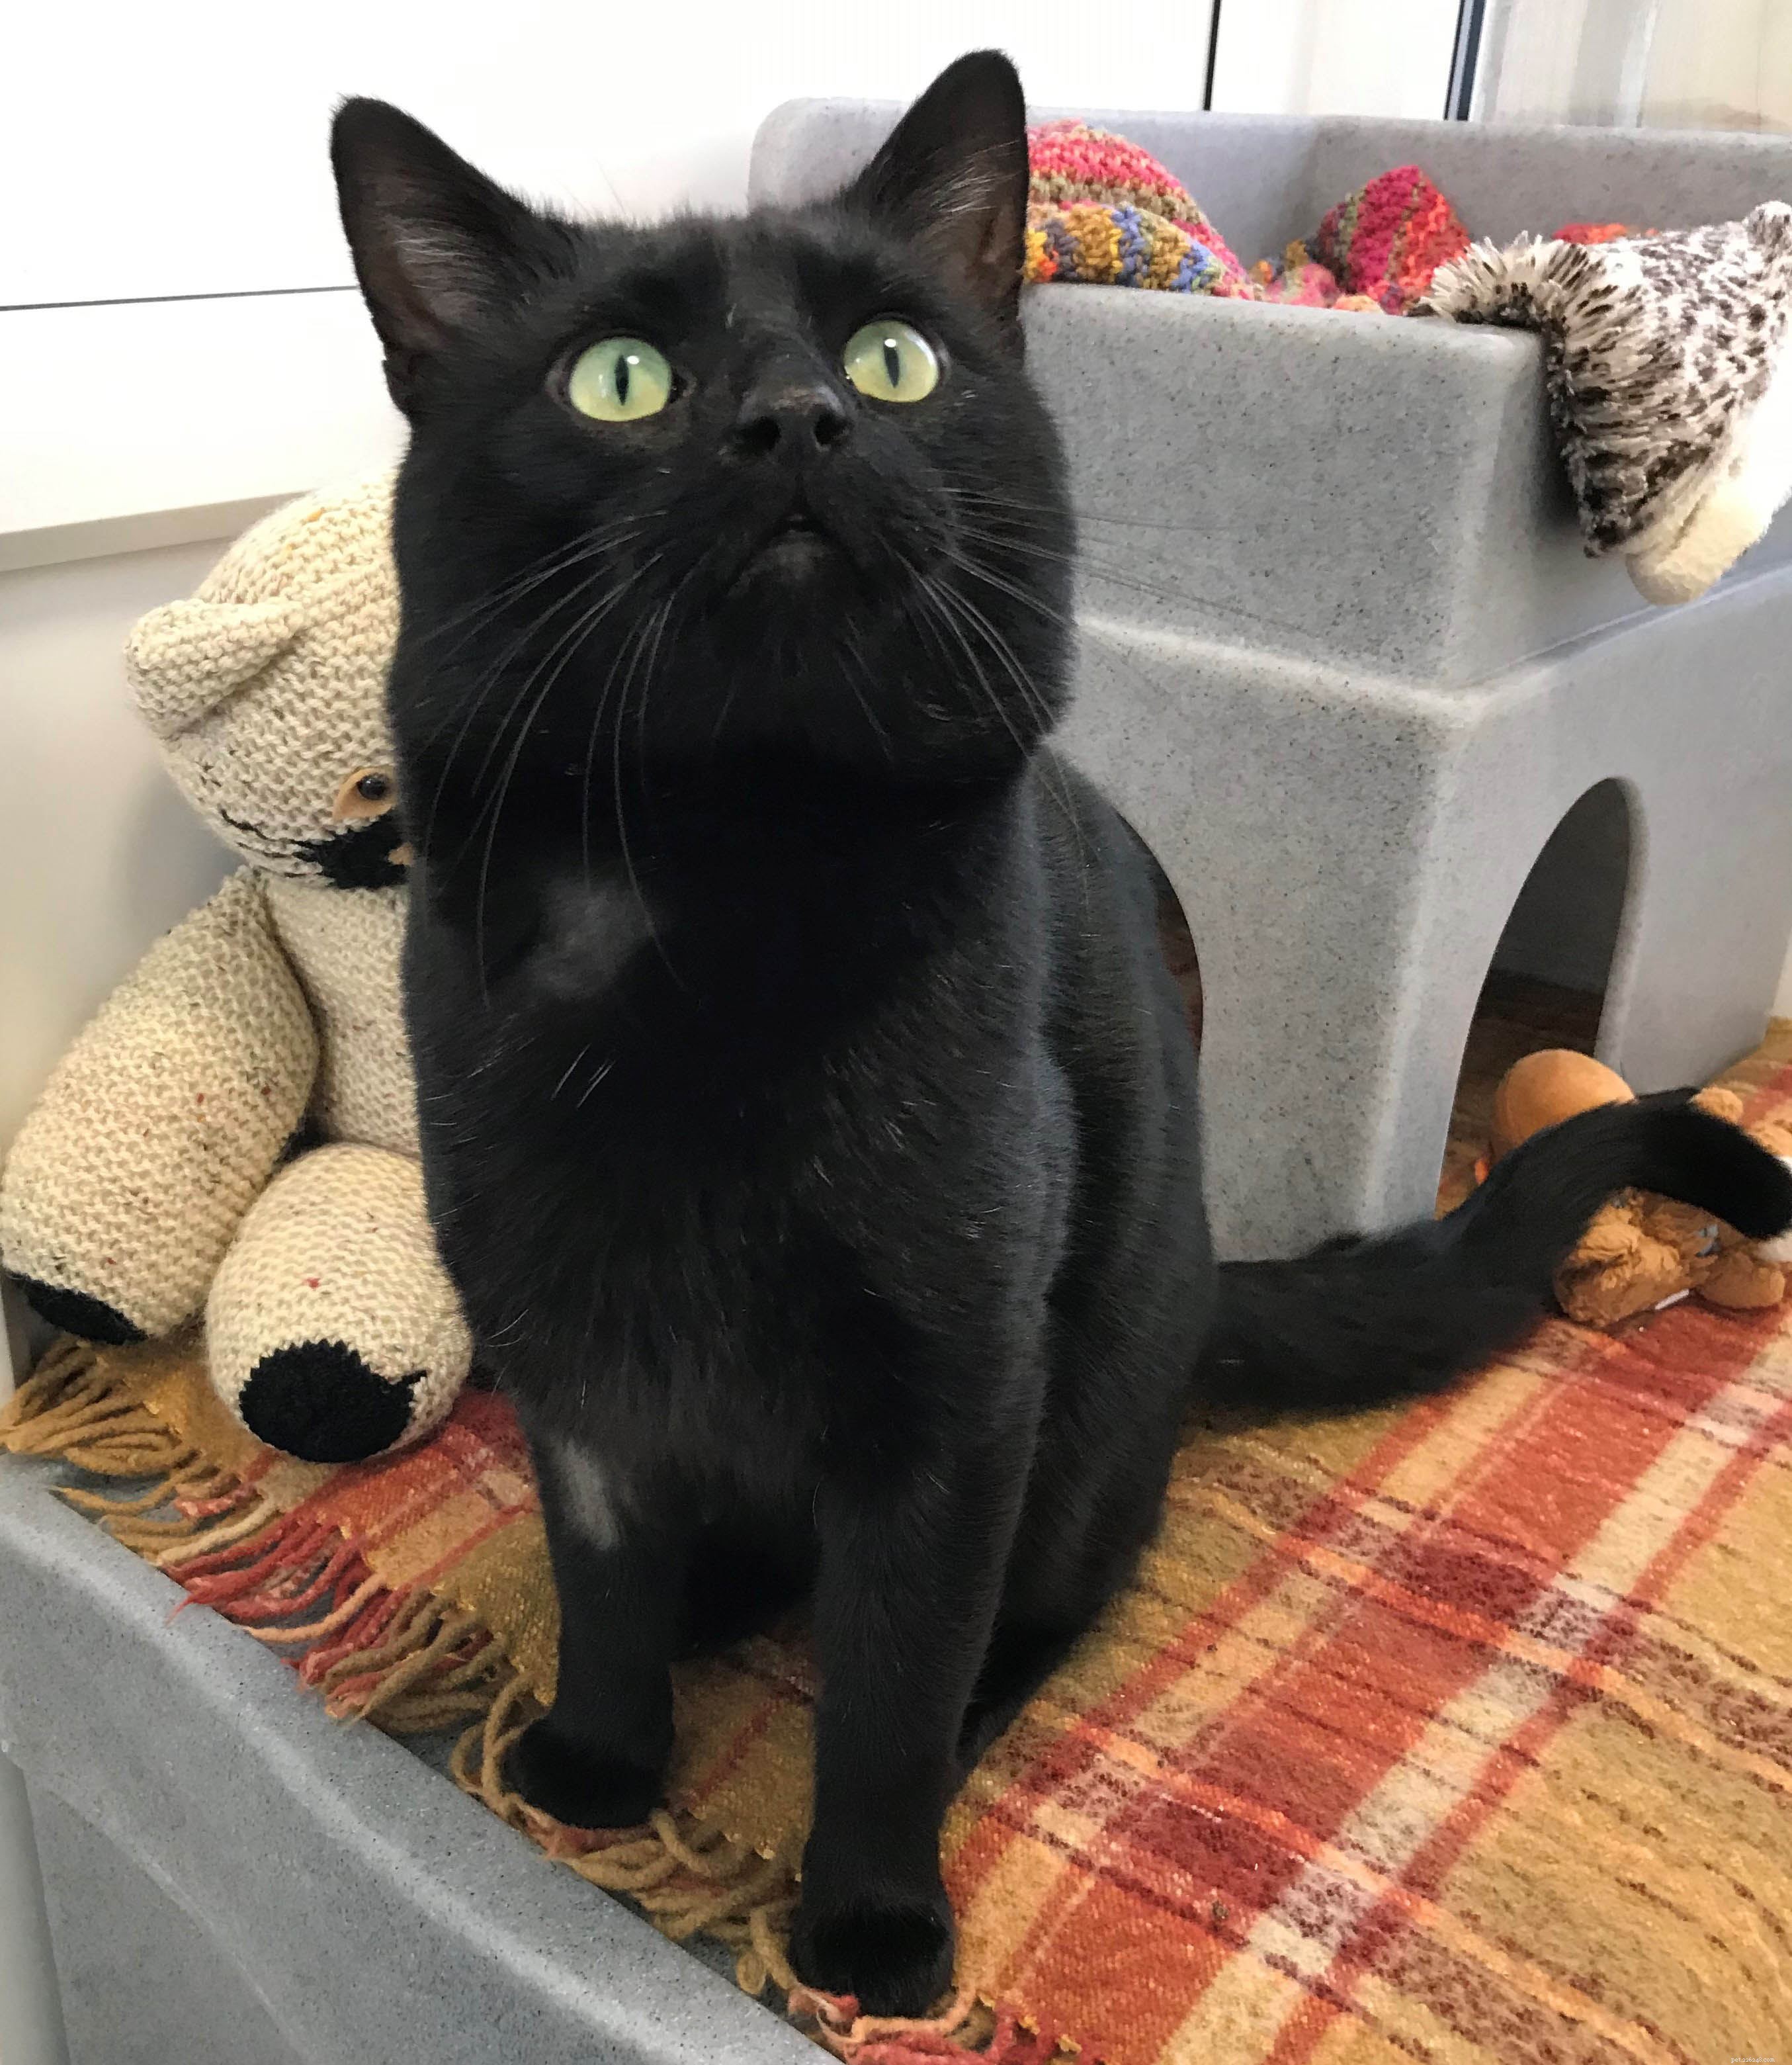 Yogi est le 1 000e chat à trouver sa nouvelle maison parfaite grâce au centre de protection des chats de Gateshead